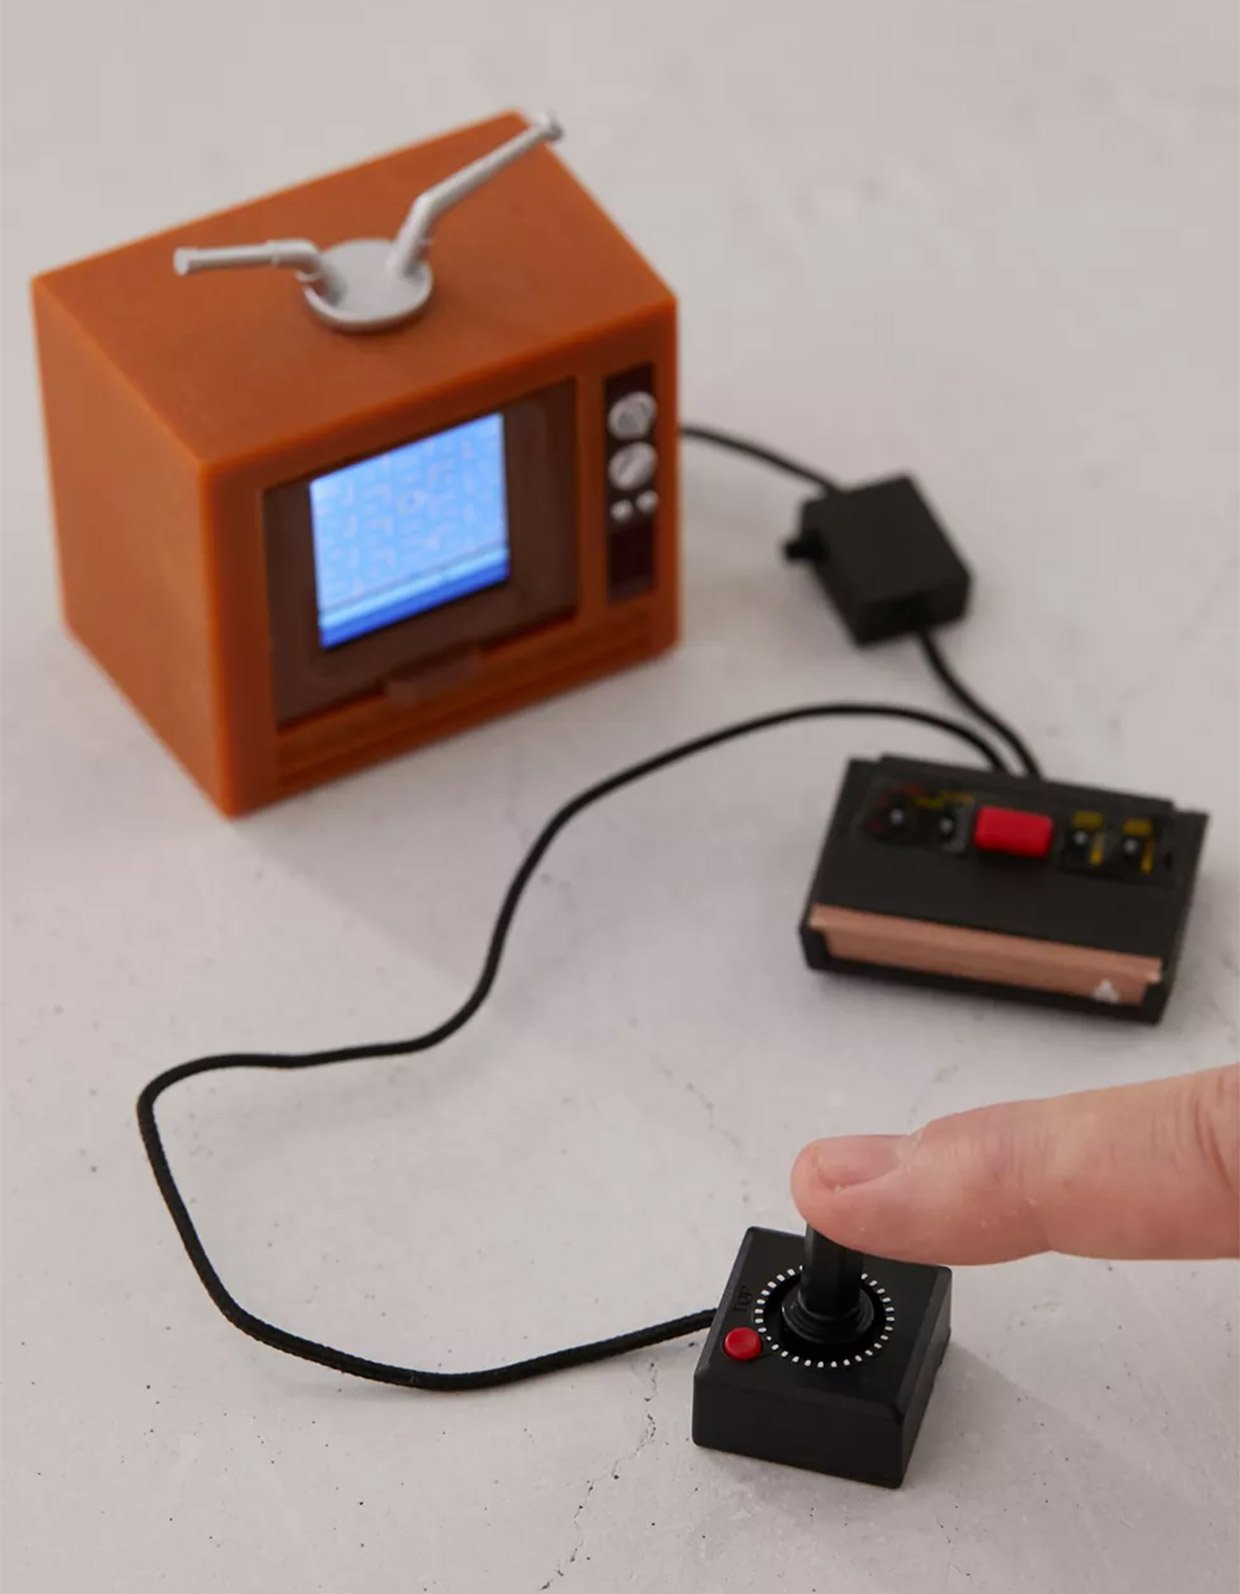 World’s Smallest Atari 2600